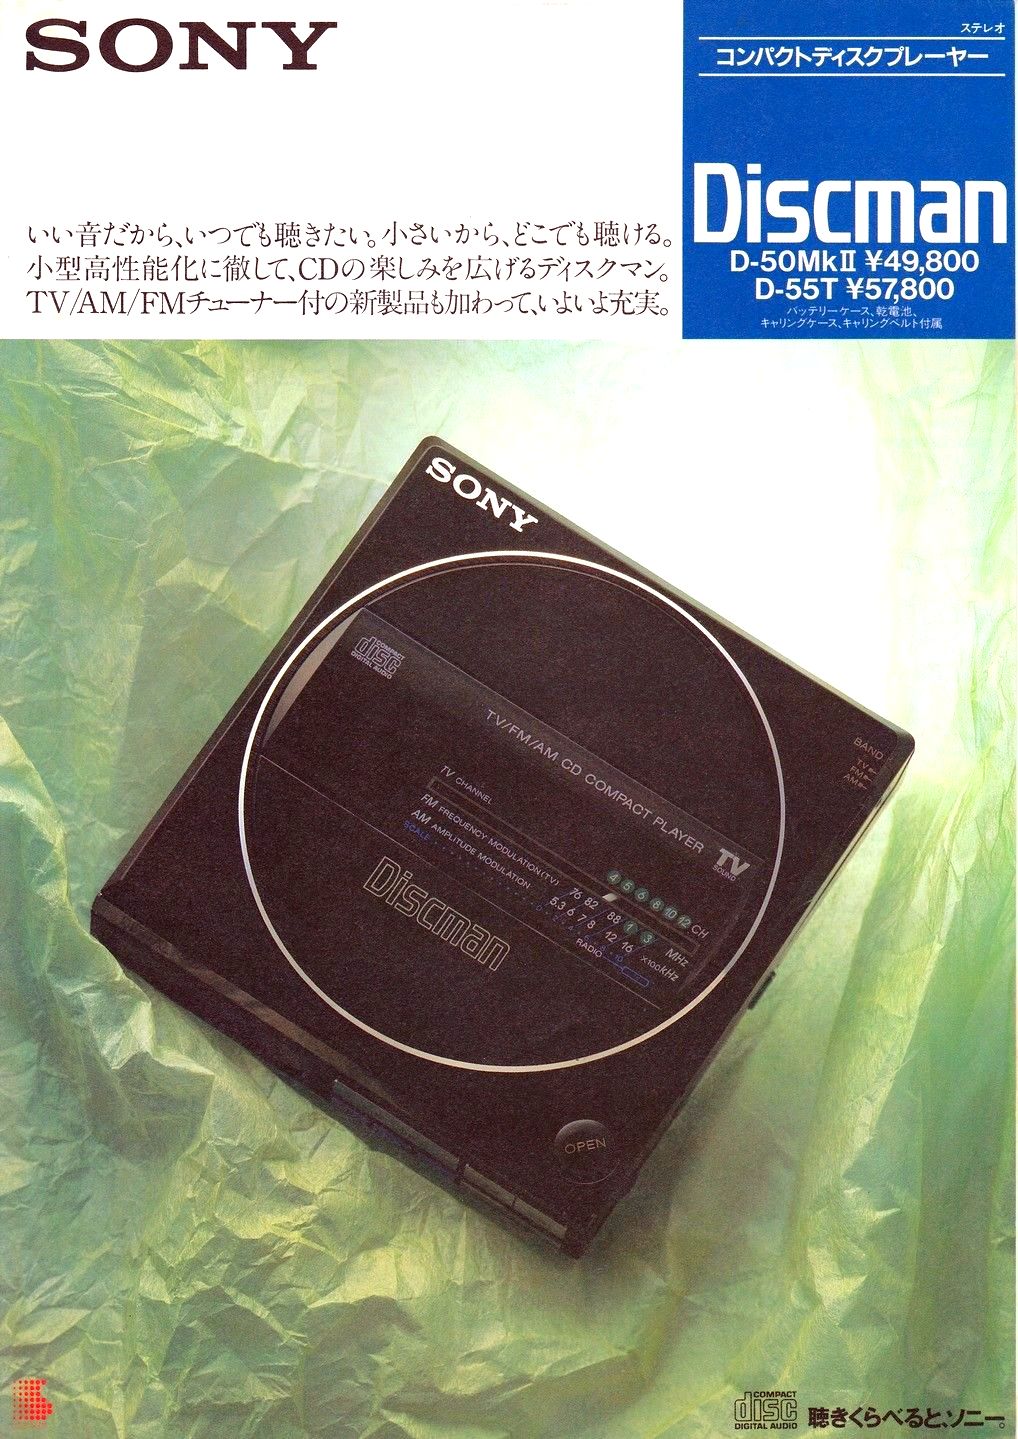 Sony D-50 II-55 T-Prospekt-1986.jpg